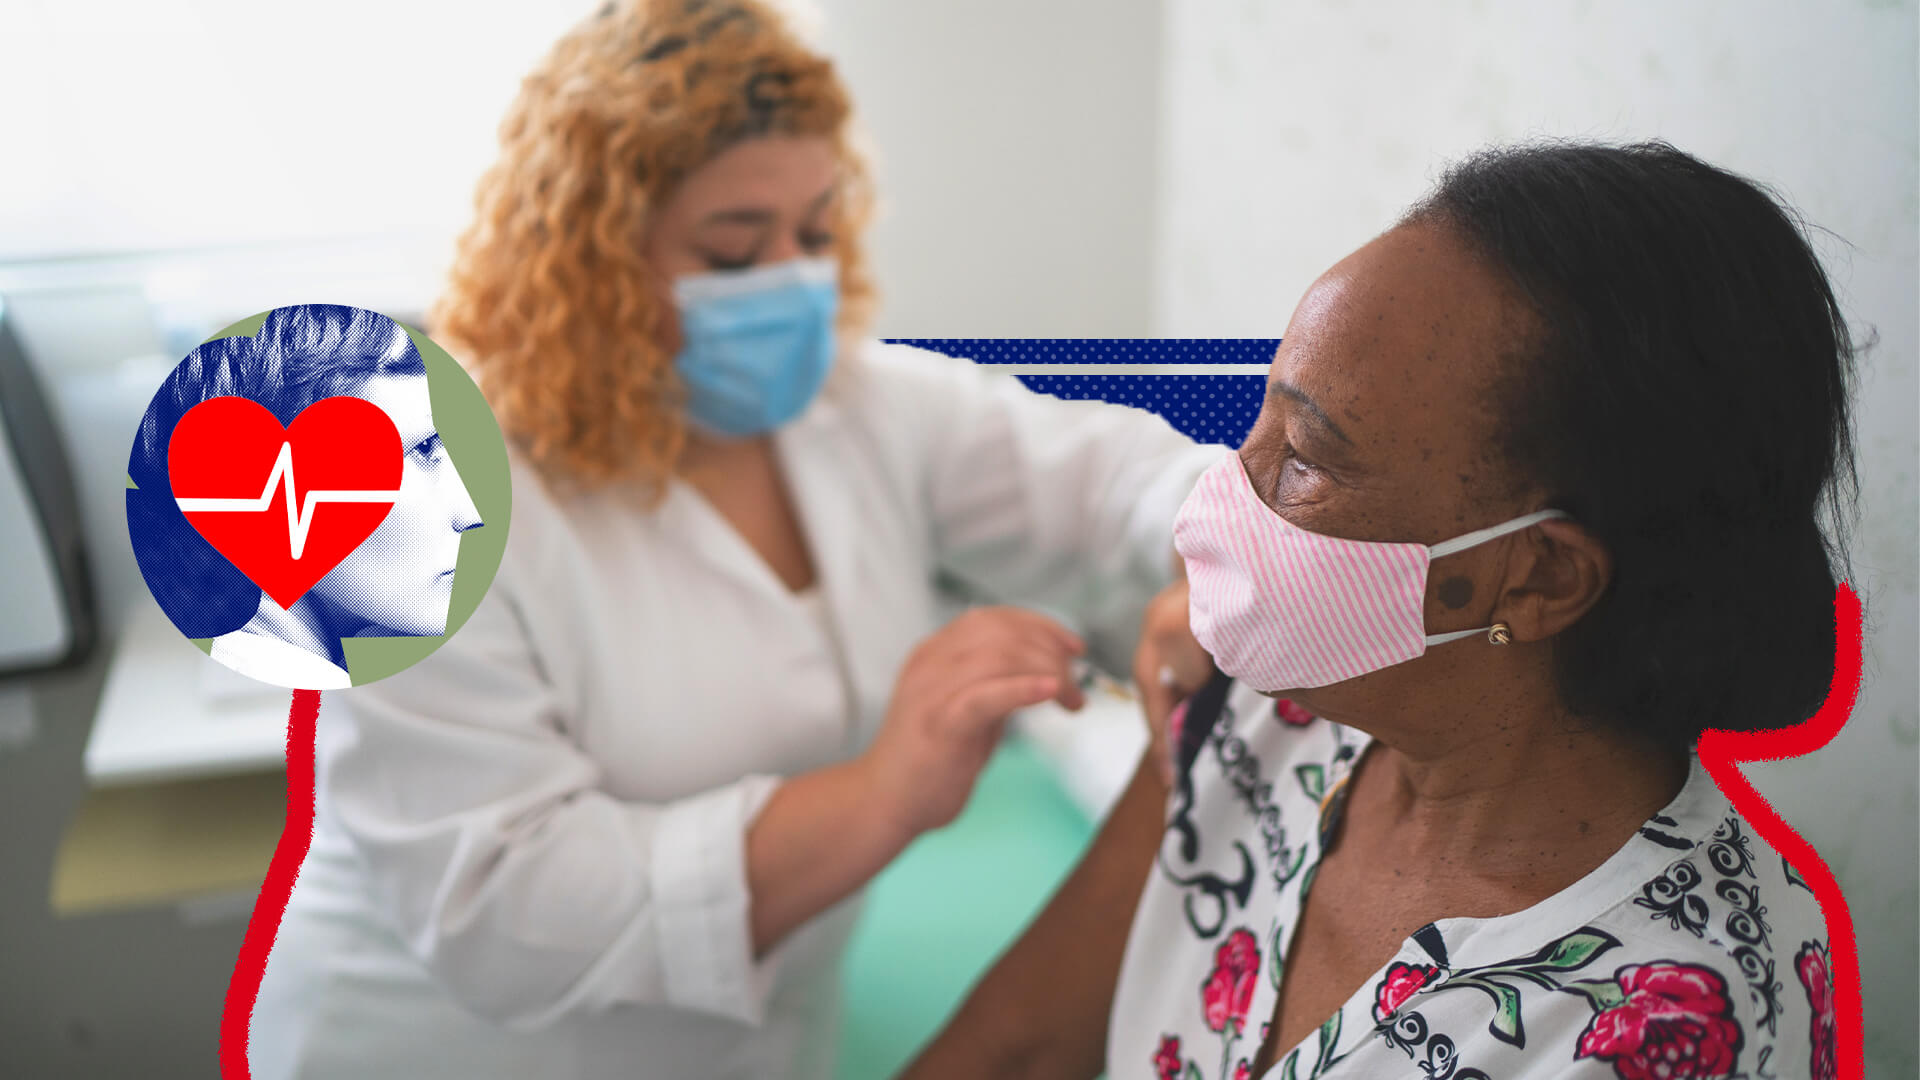 Saúde integral da mulher: uam mulher negra recebe uma vacina de uma enfermeira branca. A iamgem possui intervenções de rabiscos e colagens coloridas.